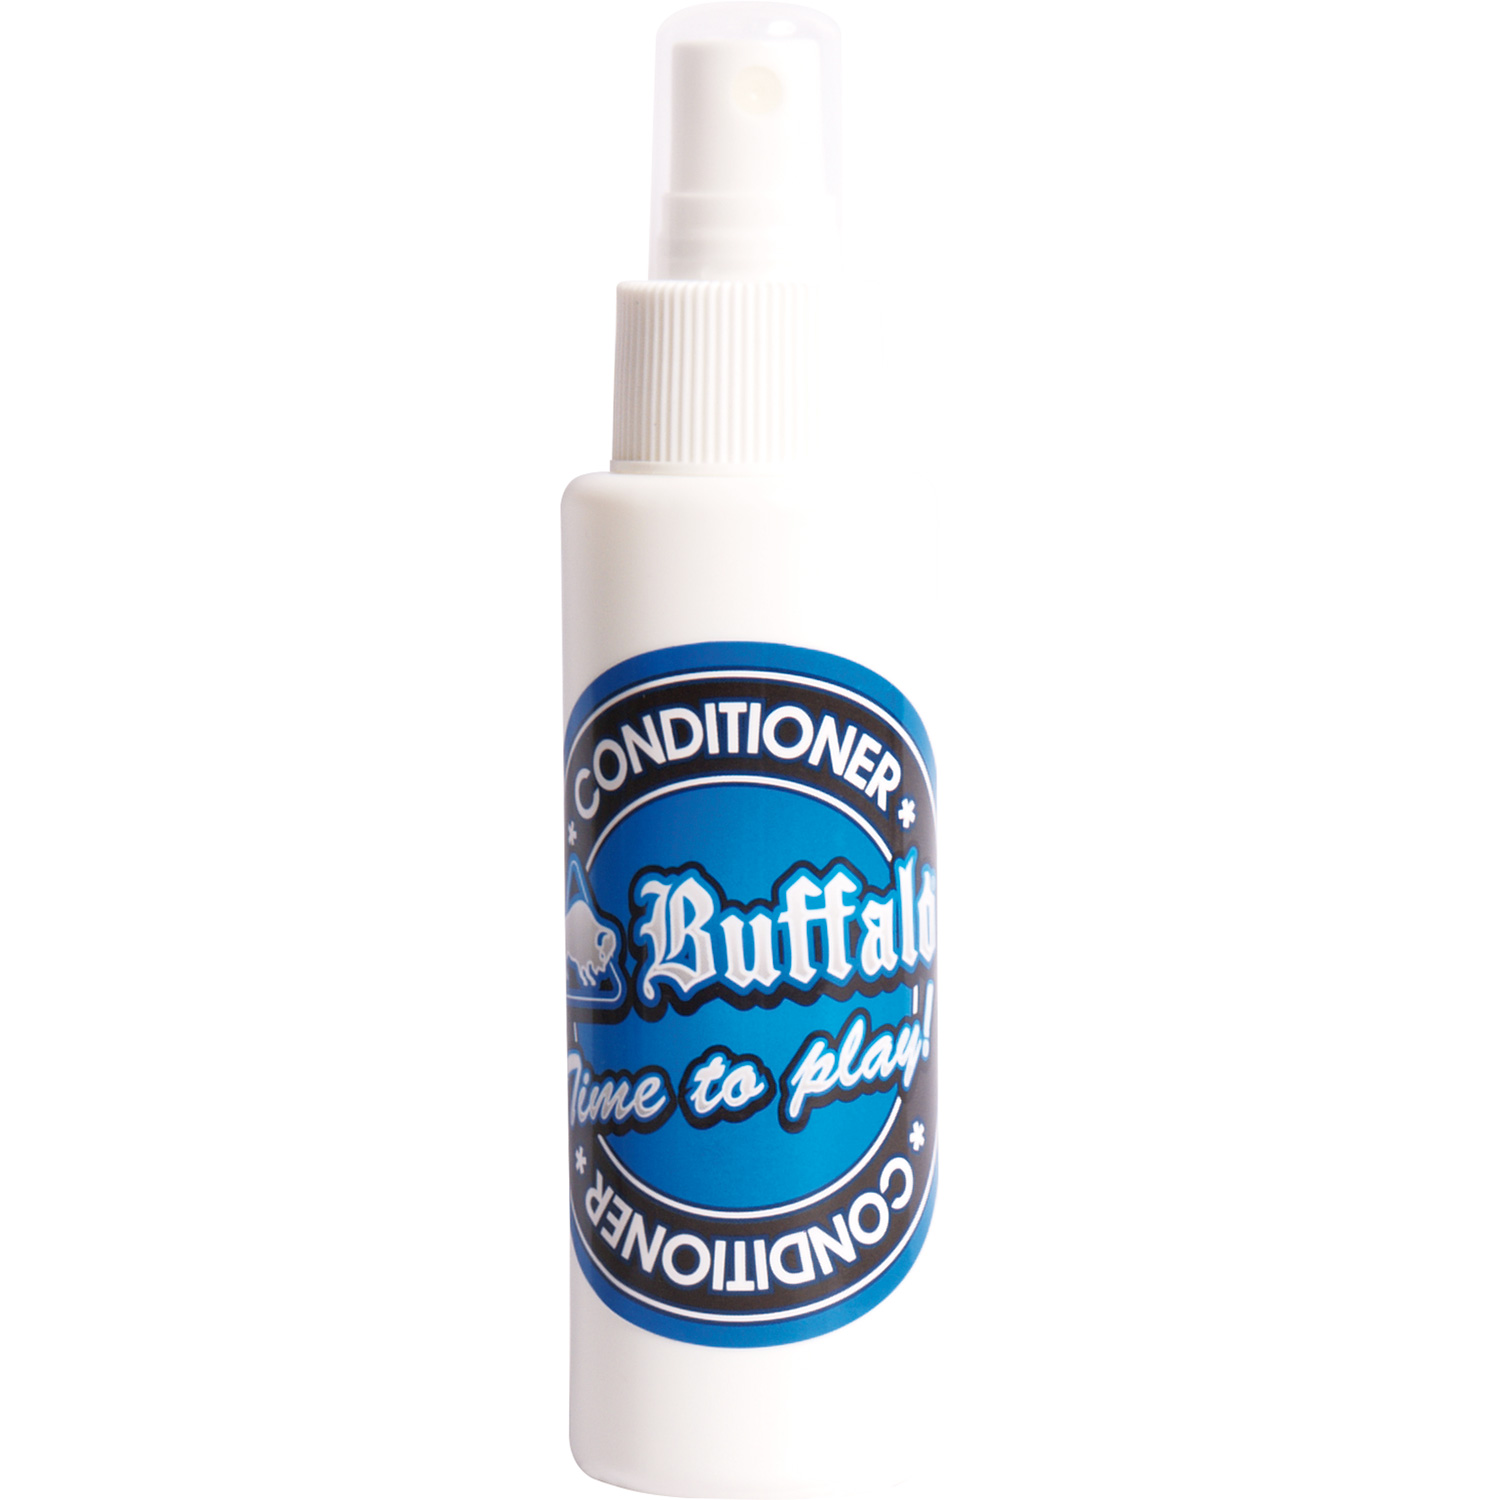 Buffalo Queue Conditioner Set